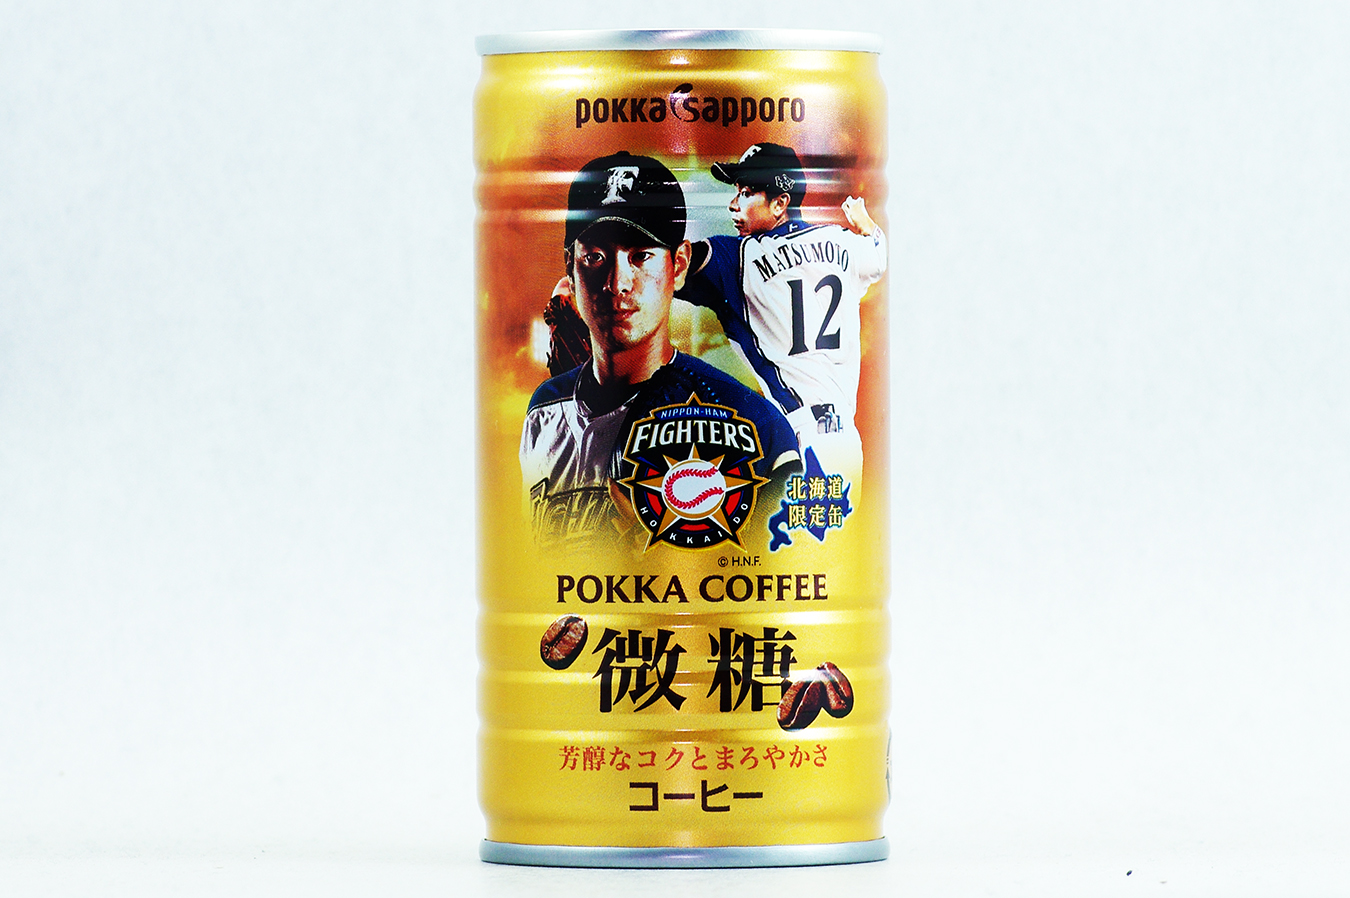 ポッカコーヒー ファイターズ2018年選手缶 微糖 松本剛選手 2018年5月